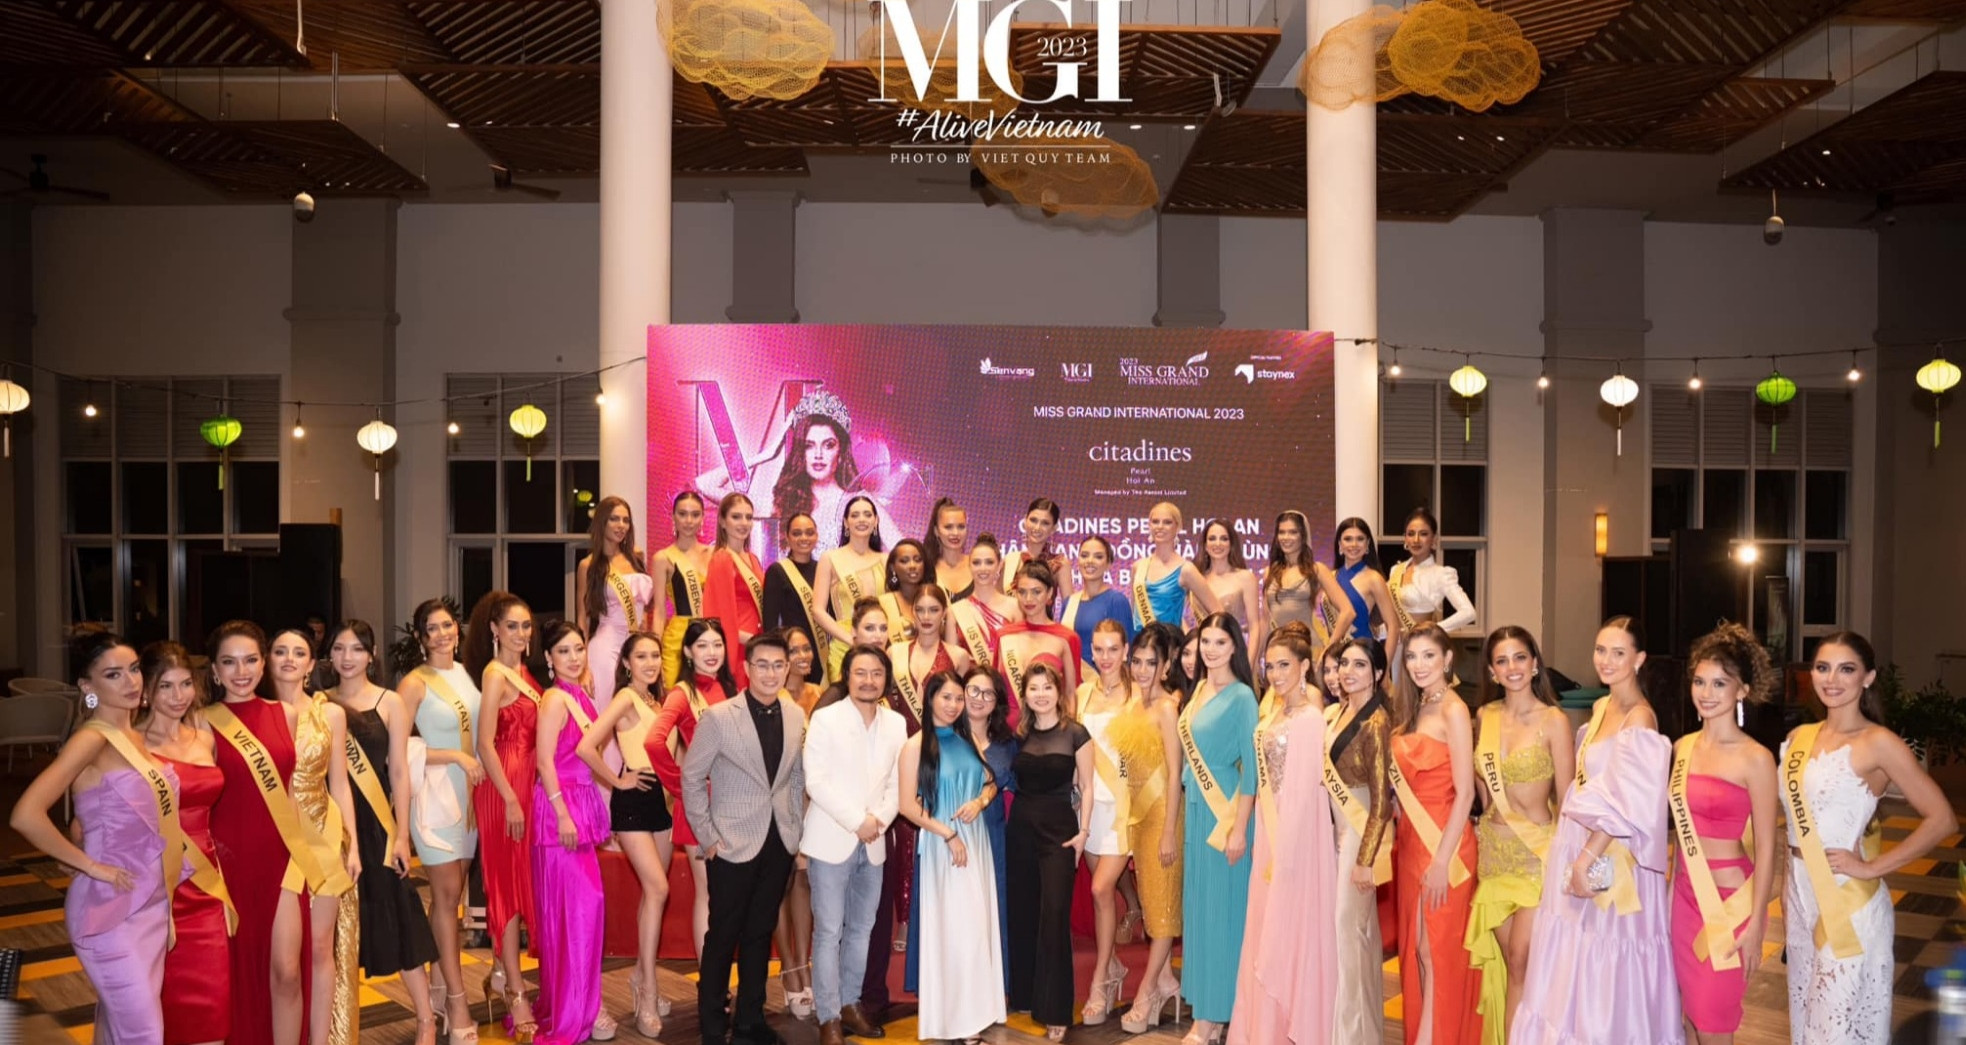  Miss Grand Colombia 2023 trải nghiệm văn hóa ẩm thực tại Citadines Pearl Hoi An